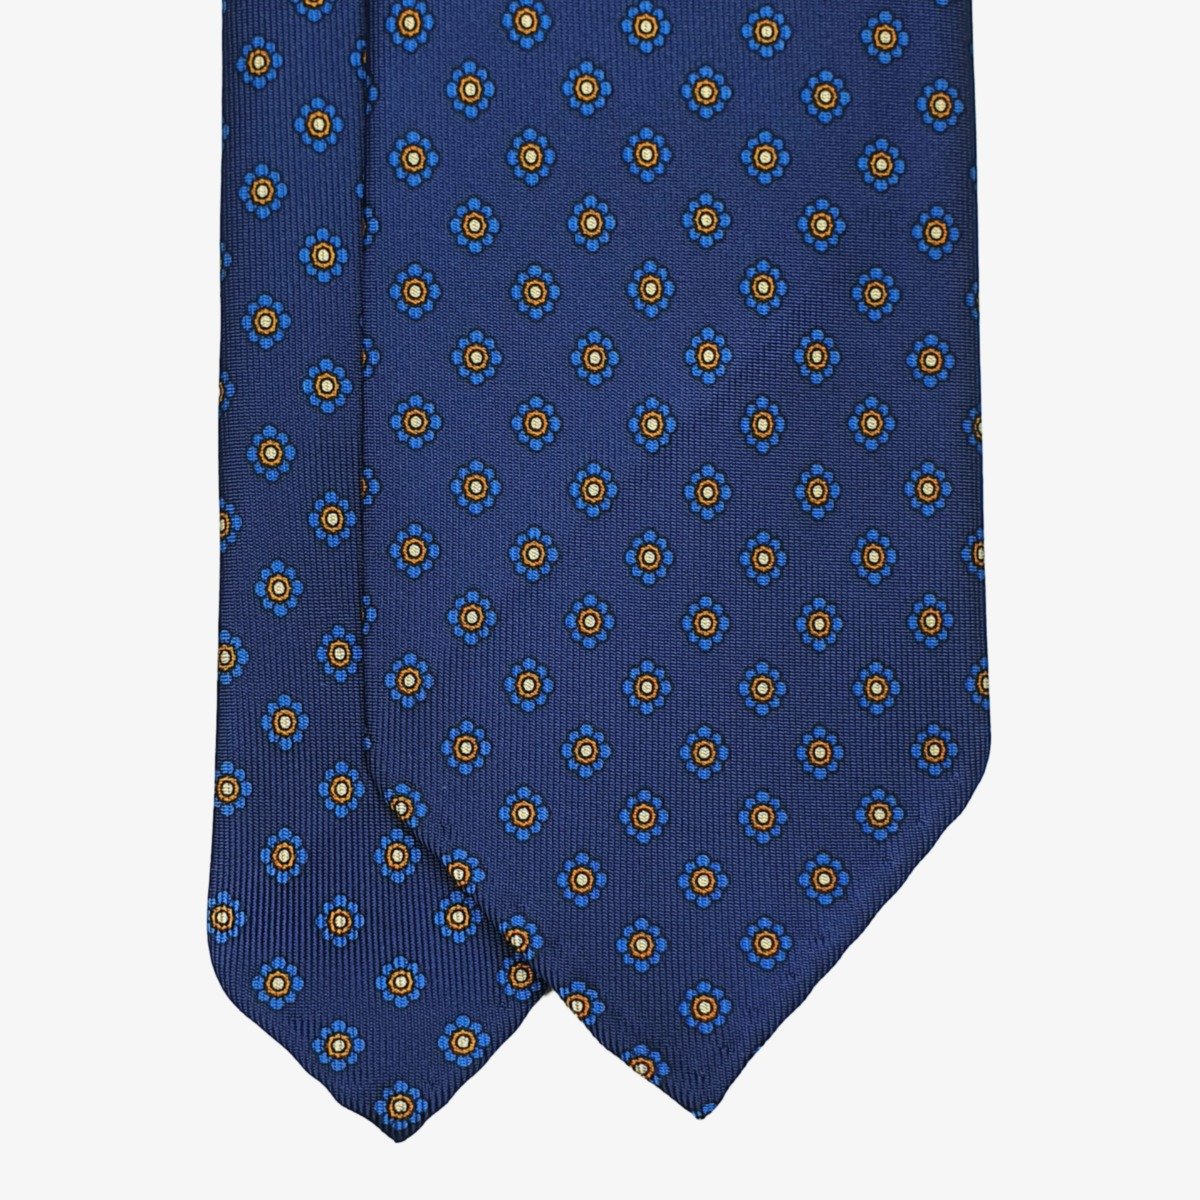 Shibumi Firenze blue silk tie with yellow flowers